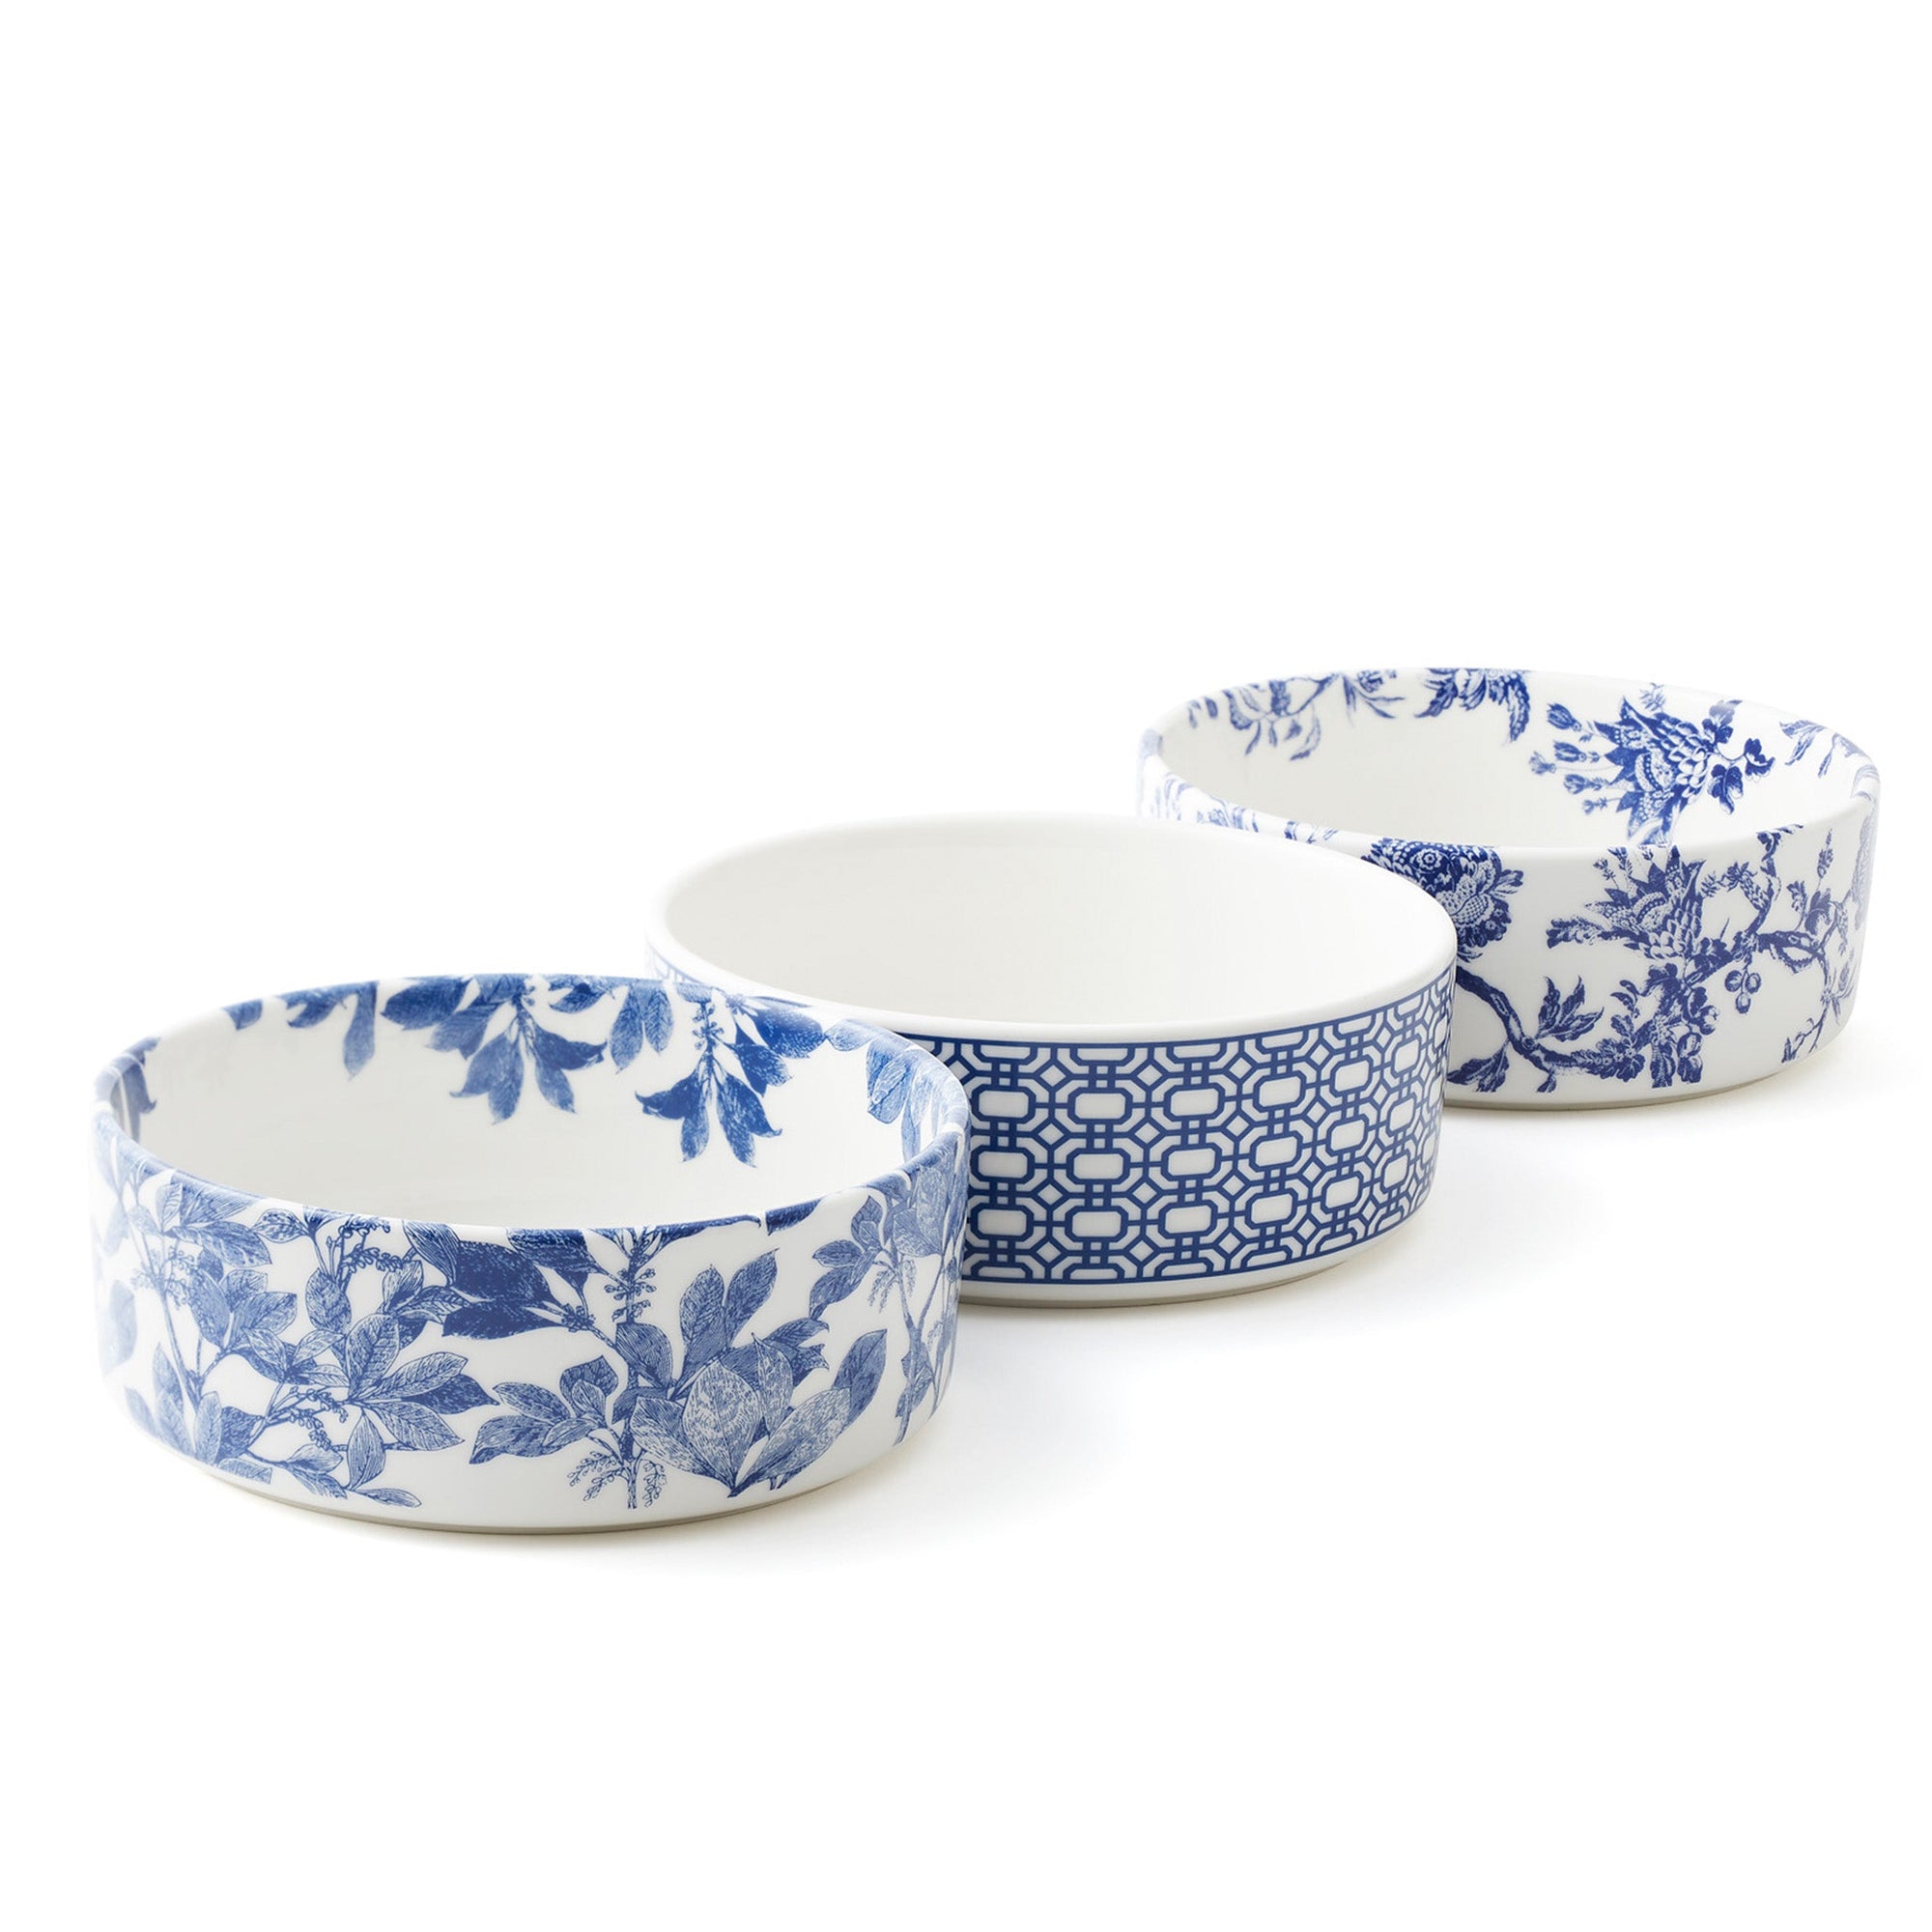 Arcadia blue and white premium porcelain medium pet bowl from Caskata